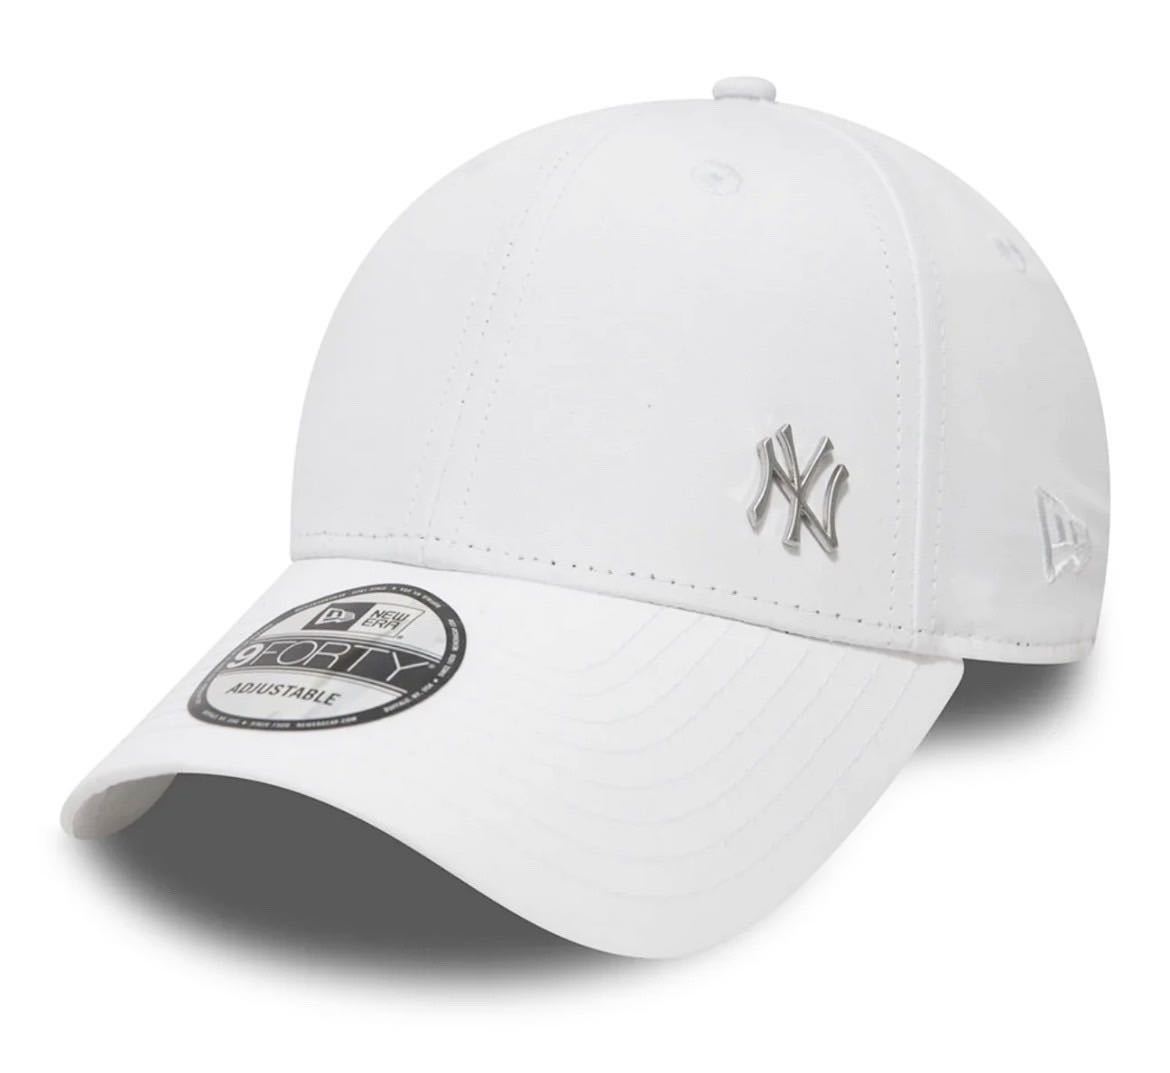 ニューエラ キャップ 帽子 9FORTY ナインフォーティ メタルロゴ サイドロゴ ホワイト ユニセックス NEWERA 9FORTY FLAWLESS LOGO 新品の画像2